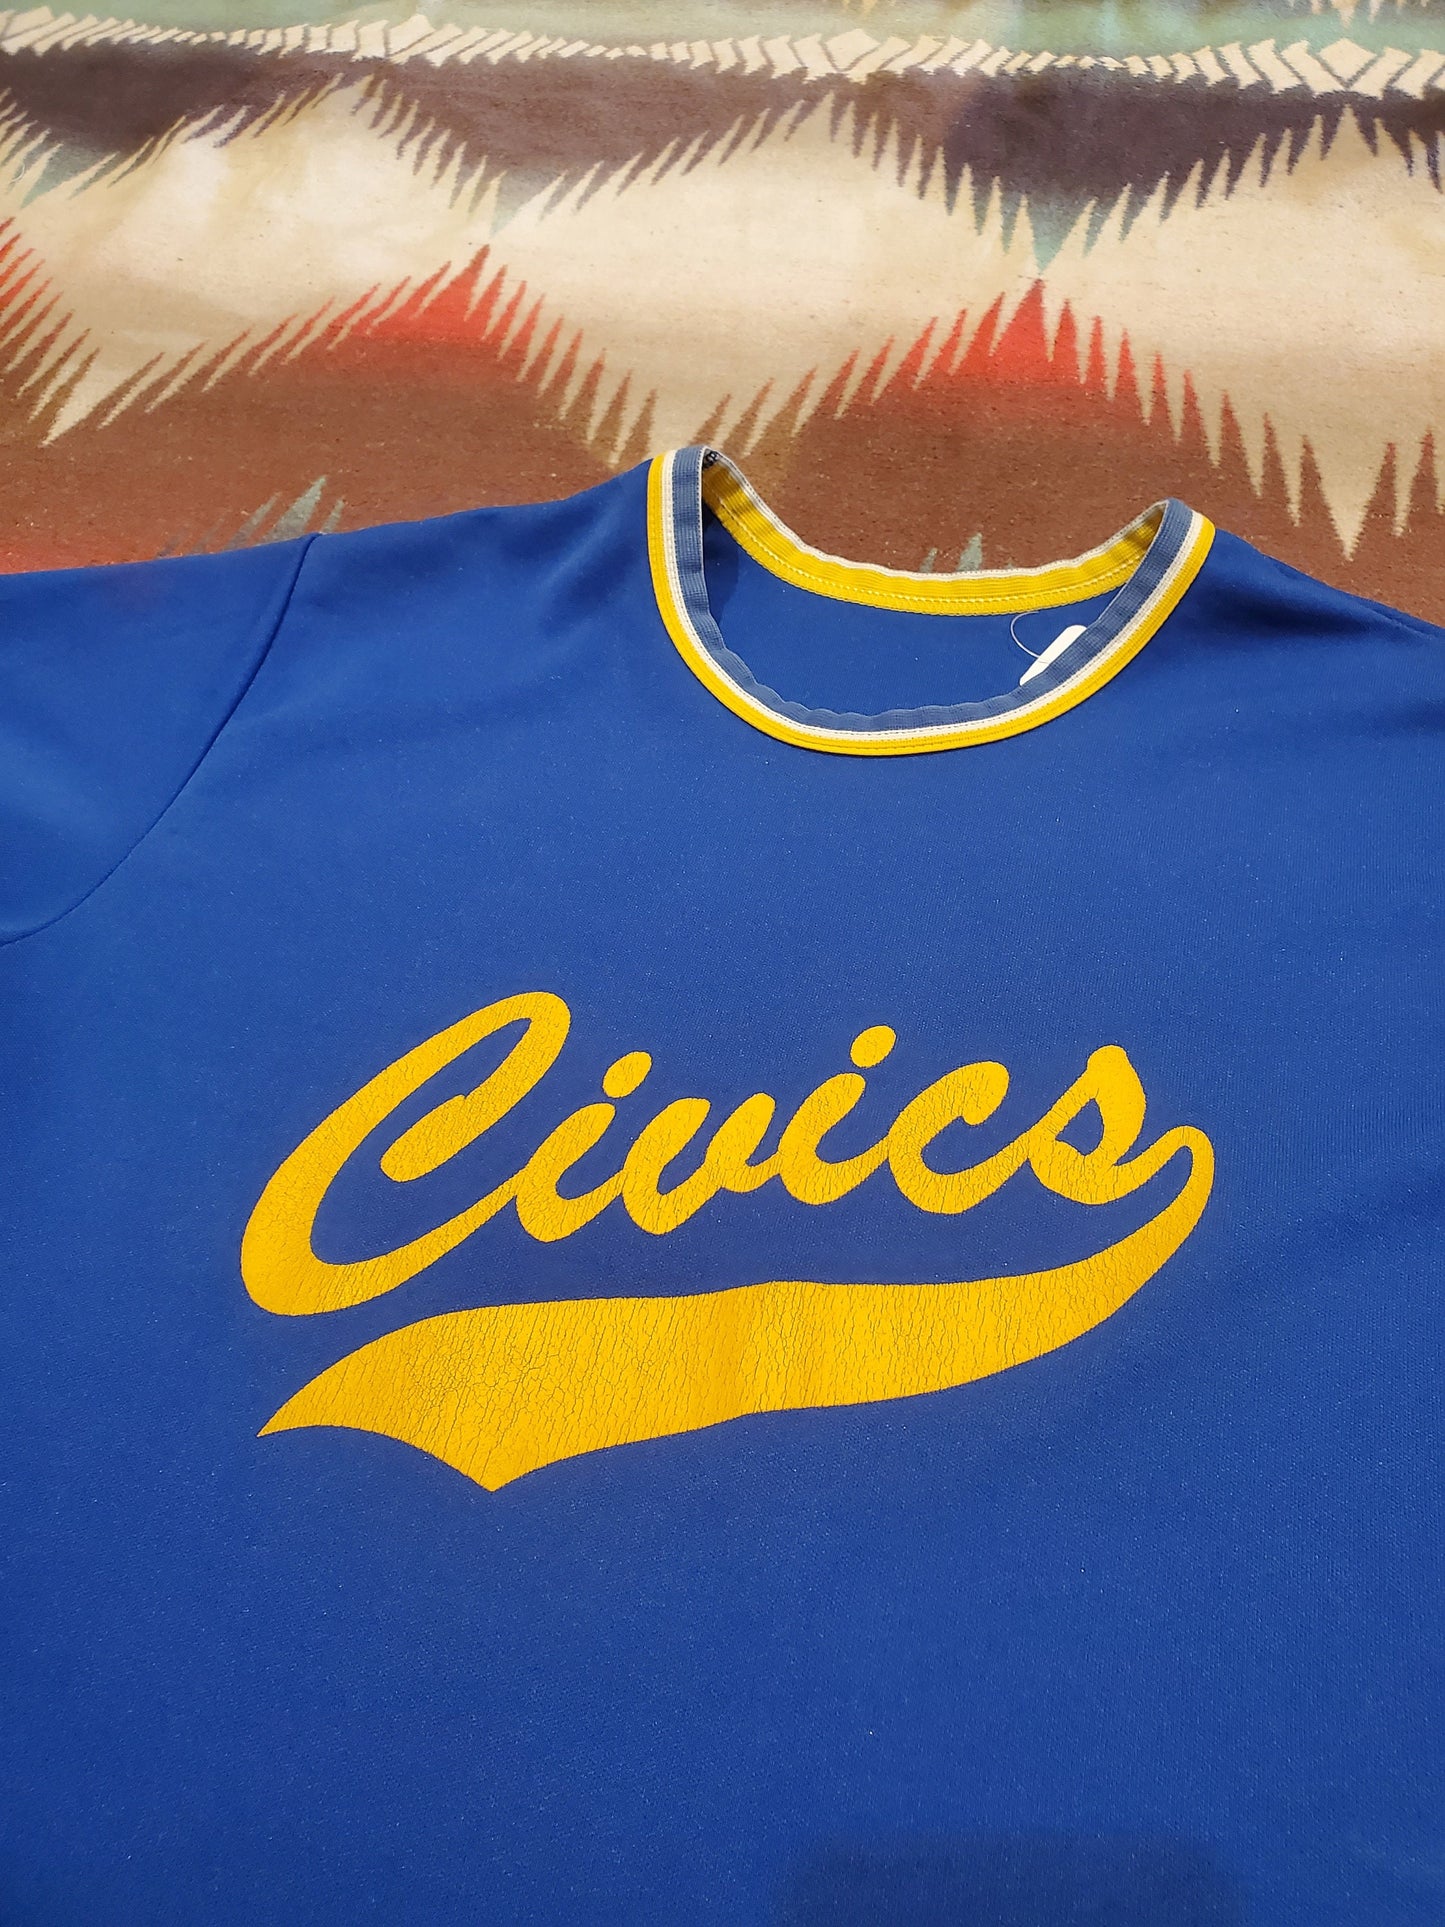 1980s/1990s Civics Baseball Jersey Size M